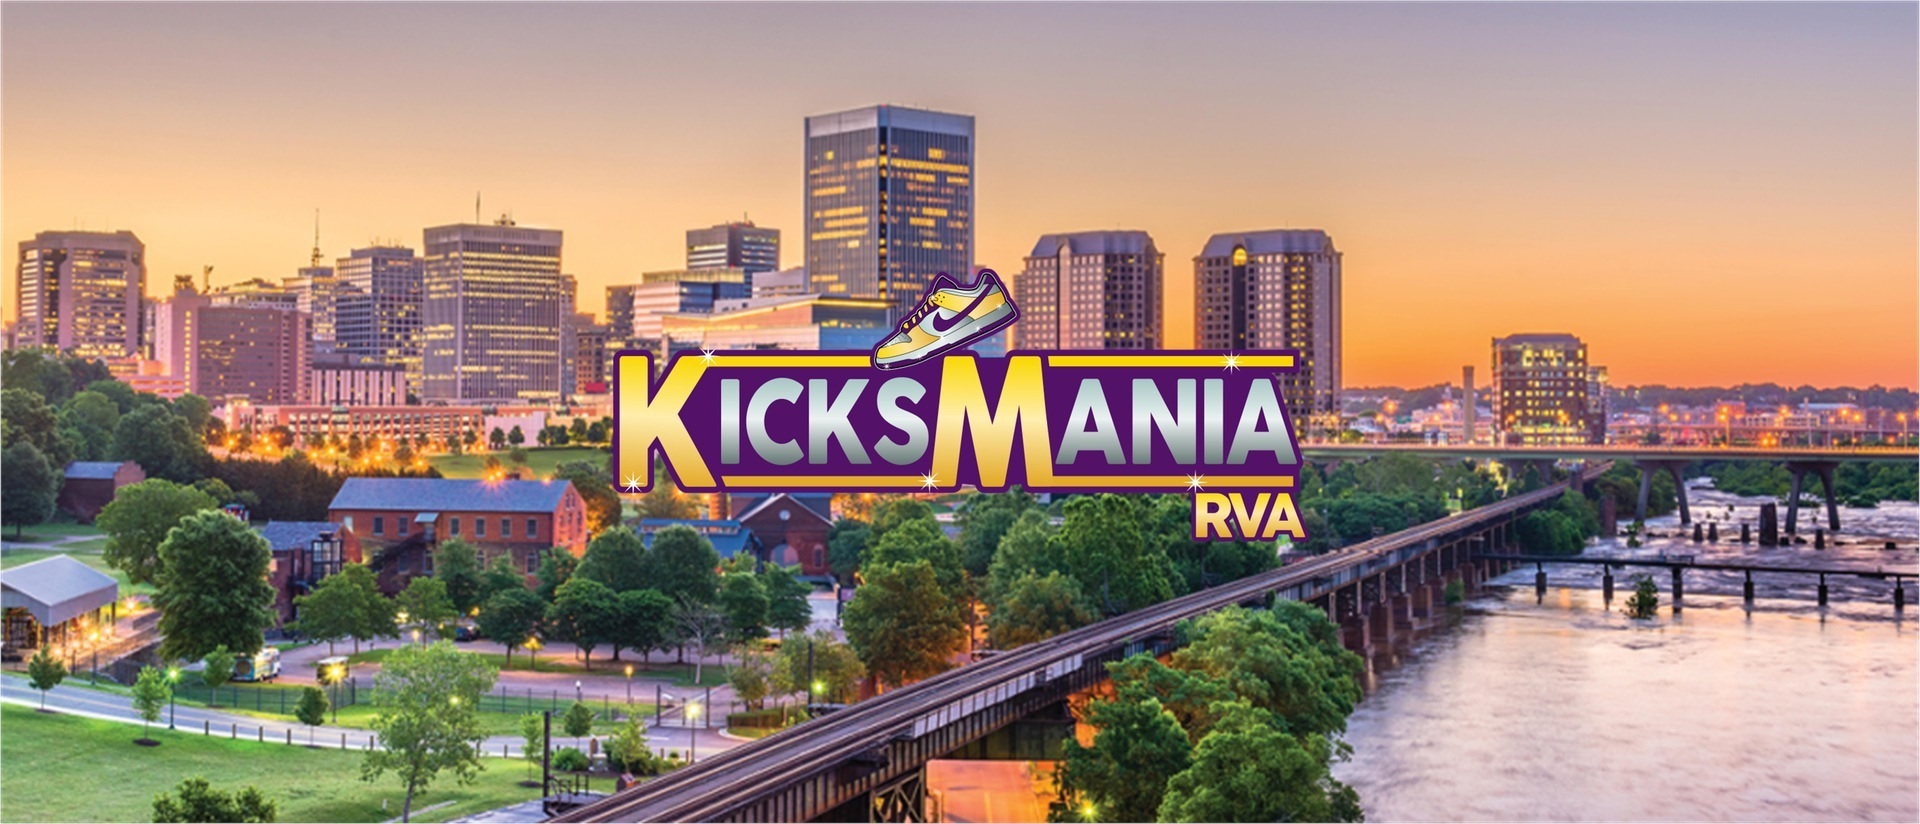 KicksMania, Richmond, Virginia, United States